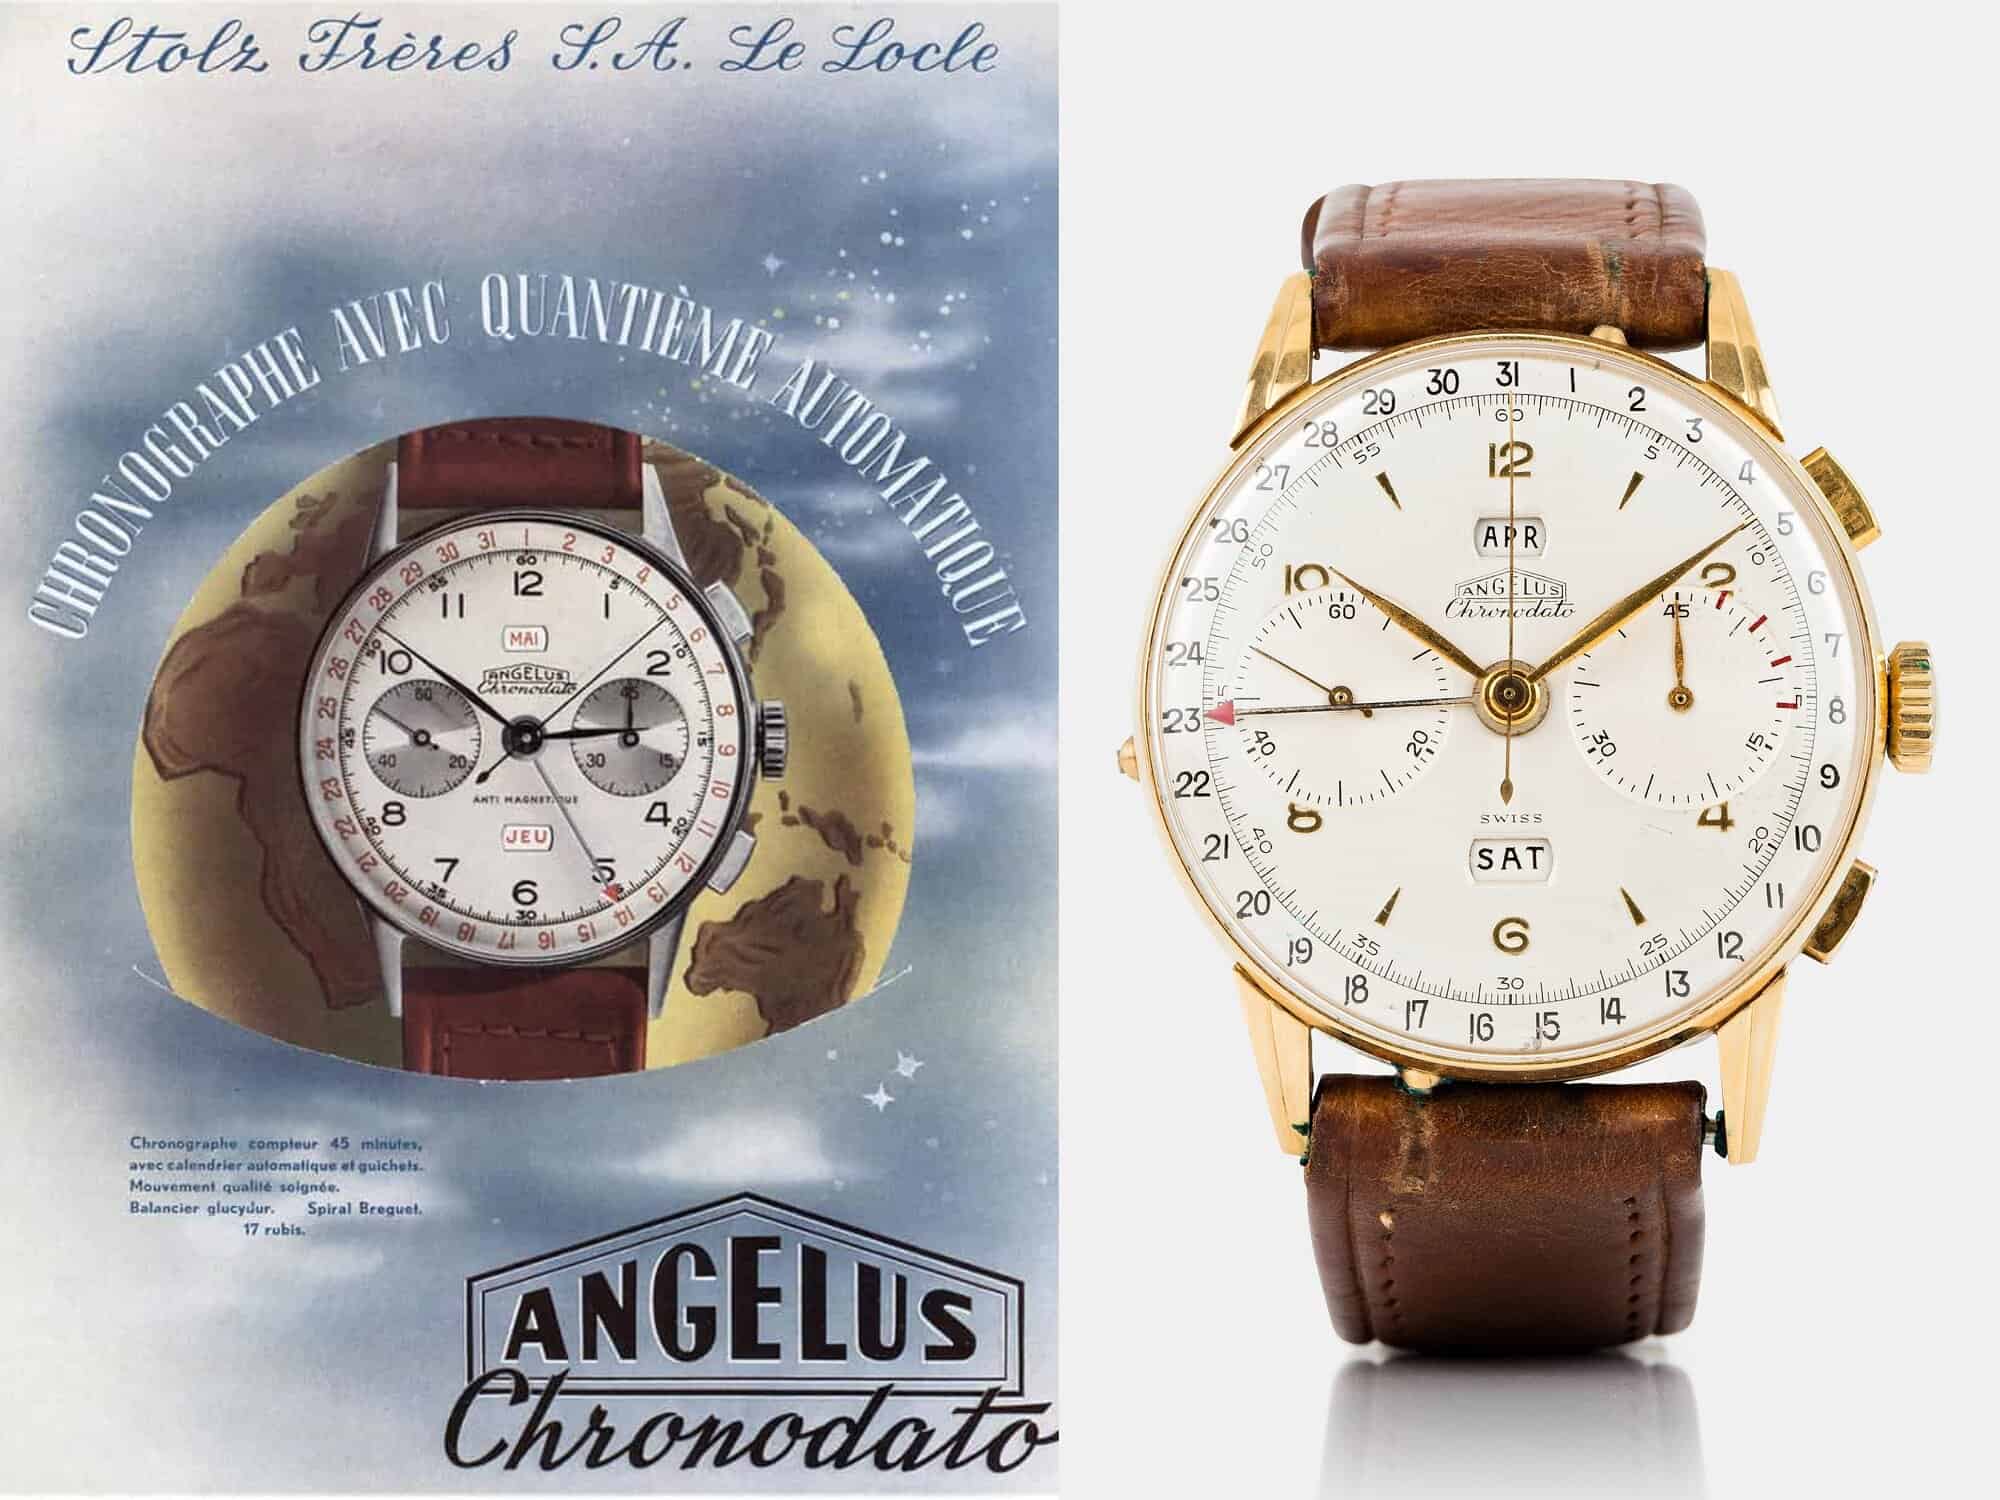 Angelus Chronodato Anzeige und Vintage Chronograph von